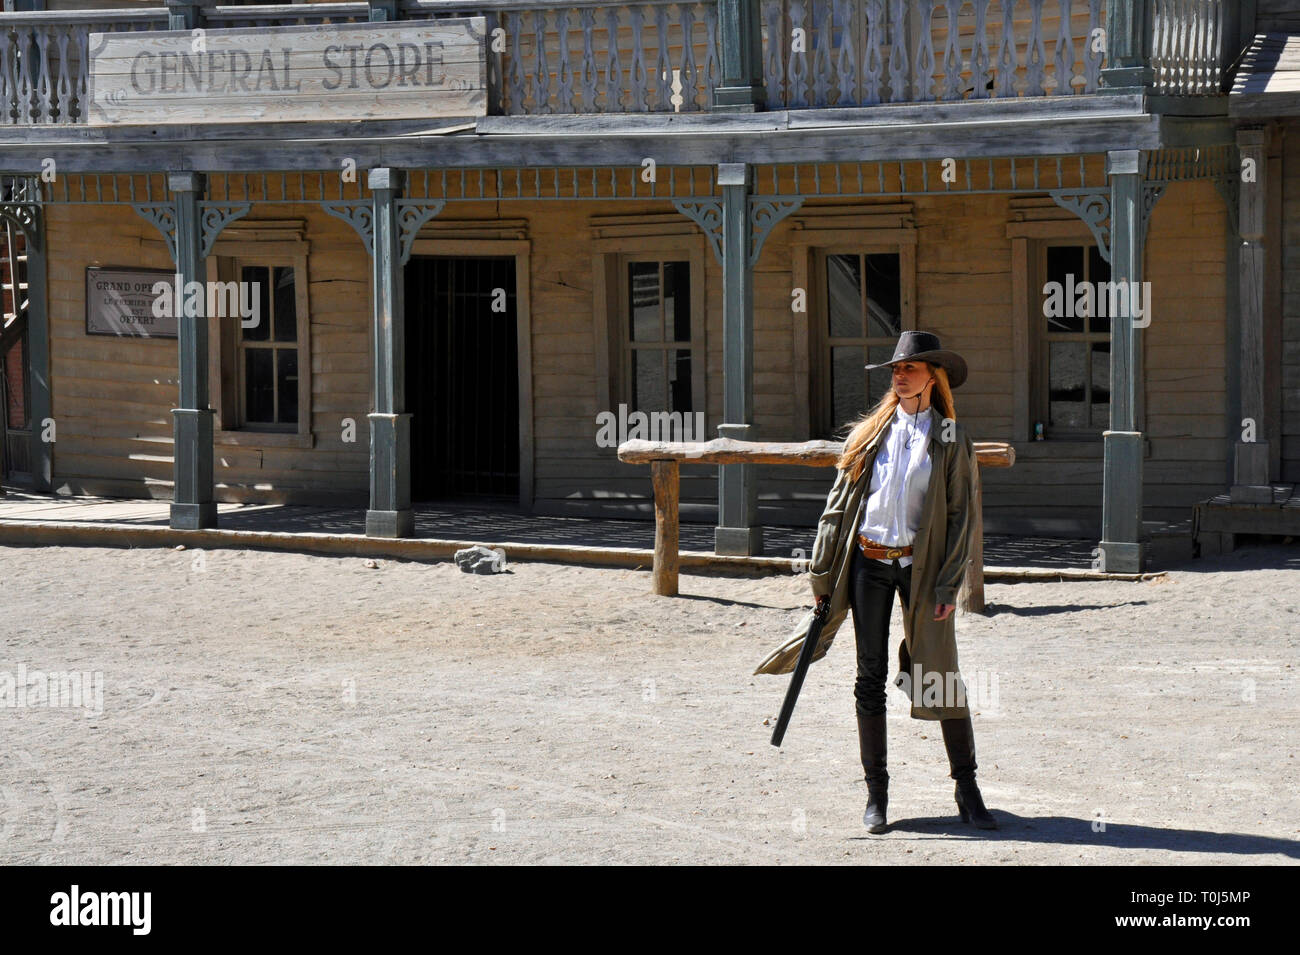 Acteurs Cowboy adopter de nouveau une scène de fusillade pour les touristes sur un ancien film sur l'ouest de Tabernas, Almeria, Espagne. Banque D'Images